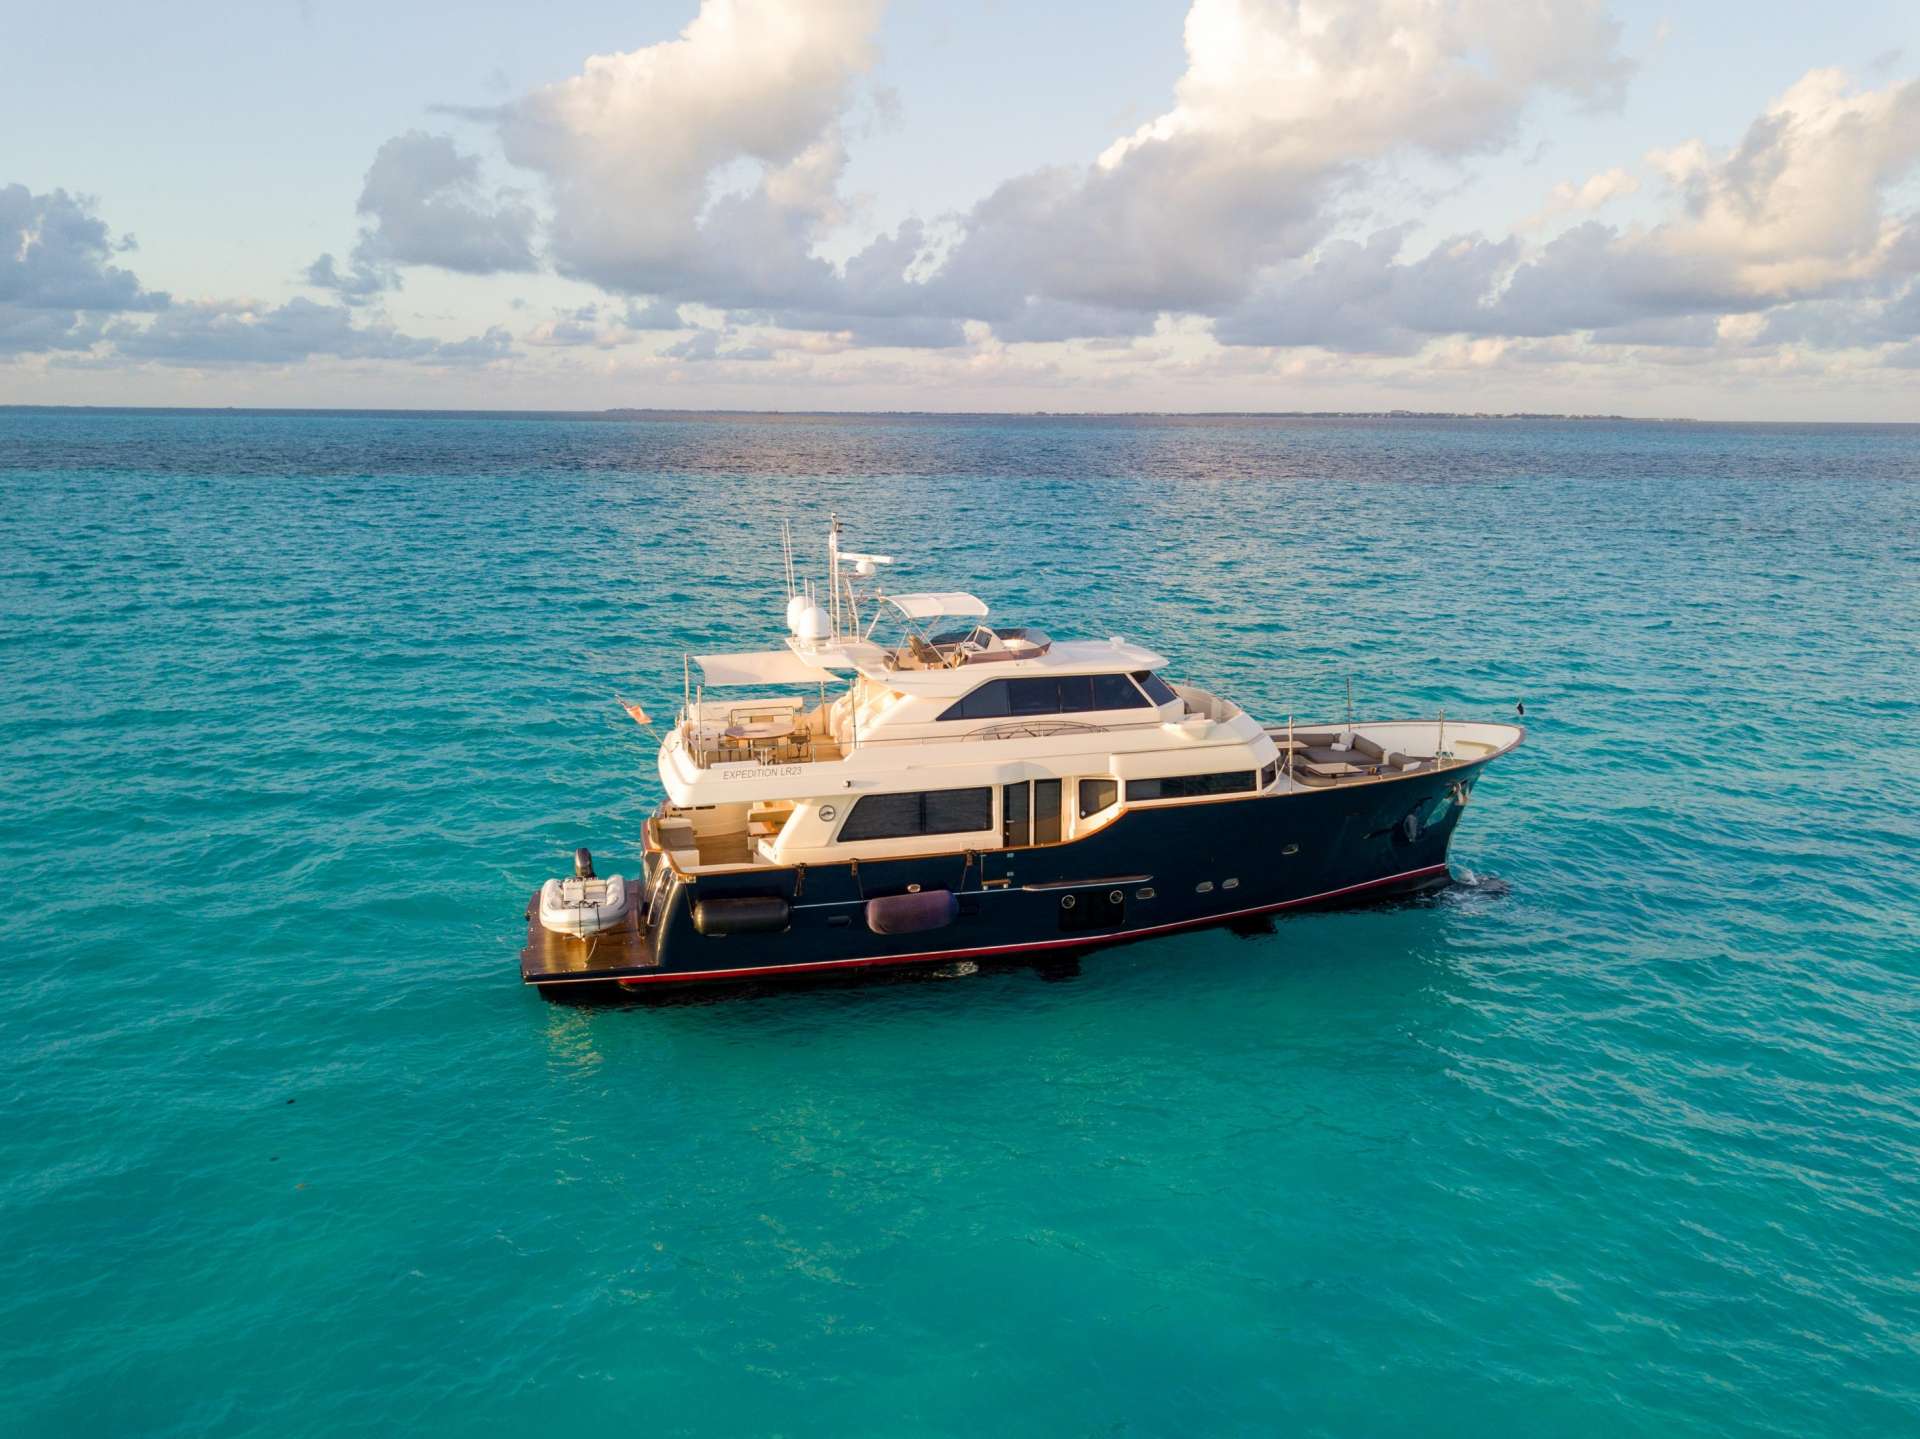 nomada - Motor Boat Charter Mexico & Boat hire in US East Coast, Bahamas & Mexico 1